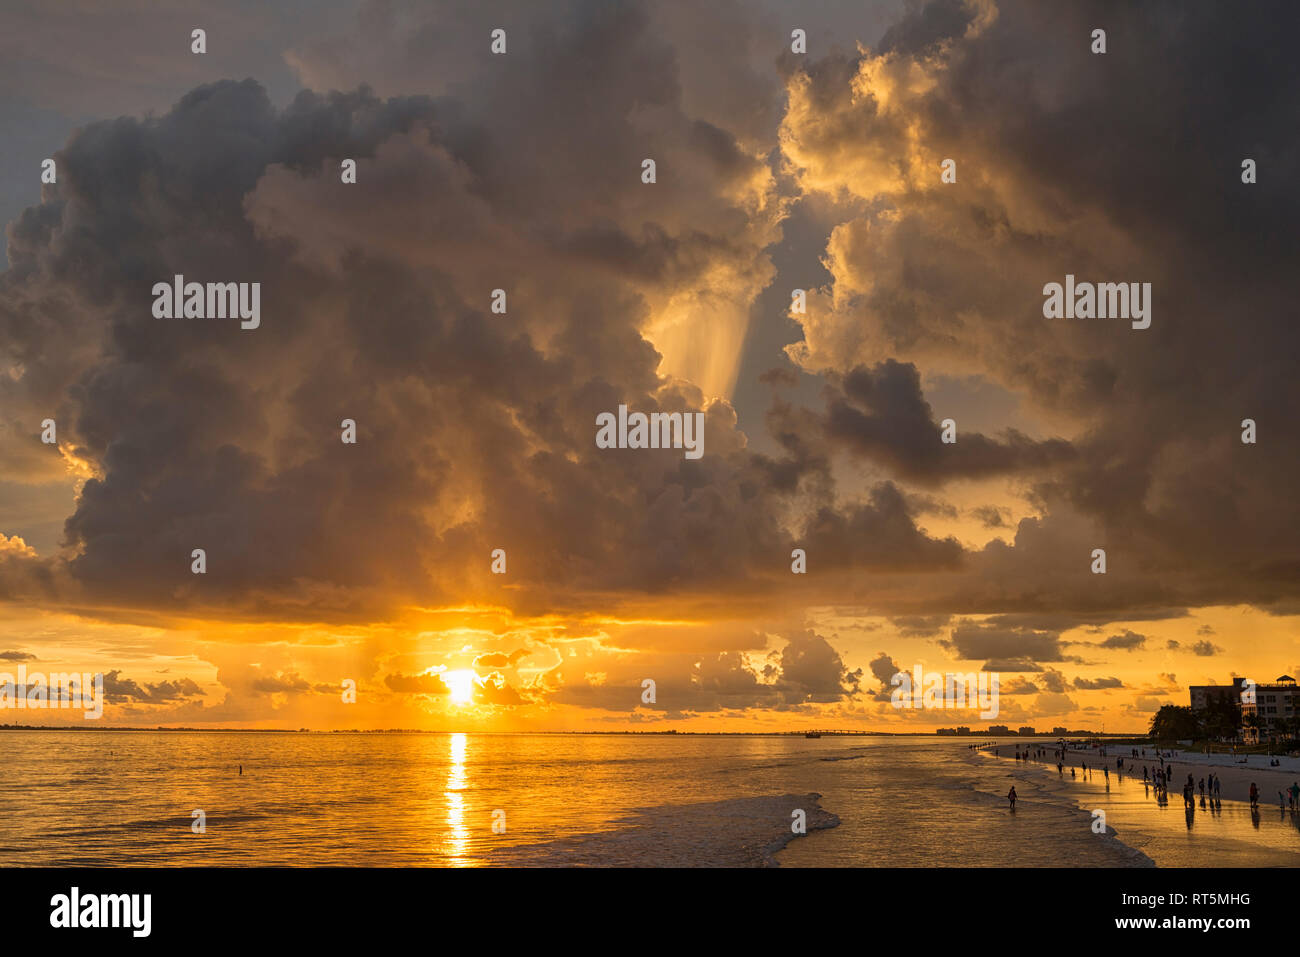 Vereinigte Staaten von Amerika, Florida, Fort Myers, Silhouetten von Fort Myers Beach und Touristen mit einer riesigen Wolke oben bei Sonnenuntergang Stockfoto